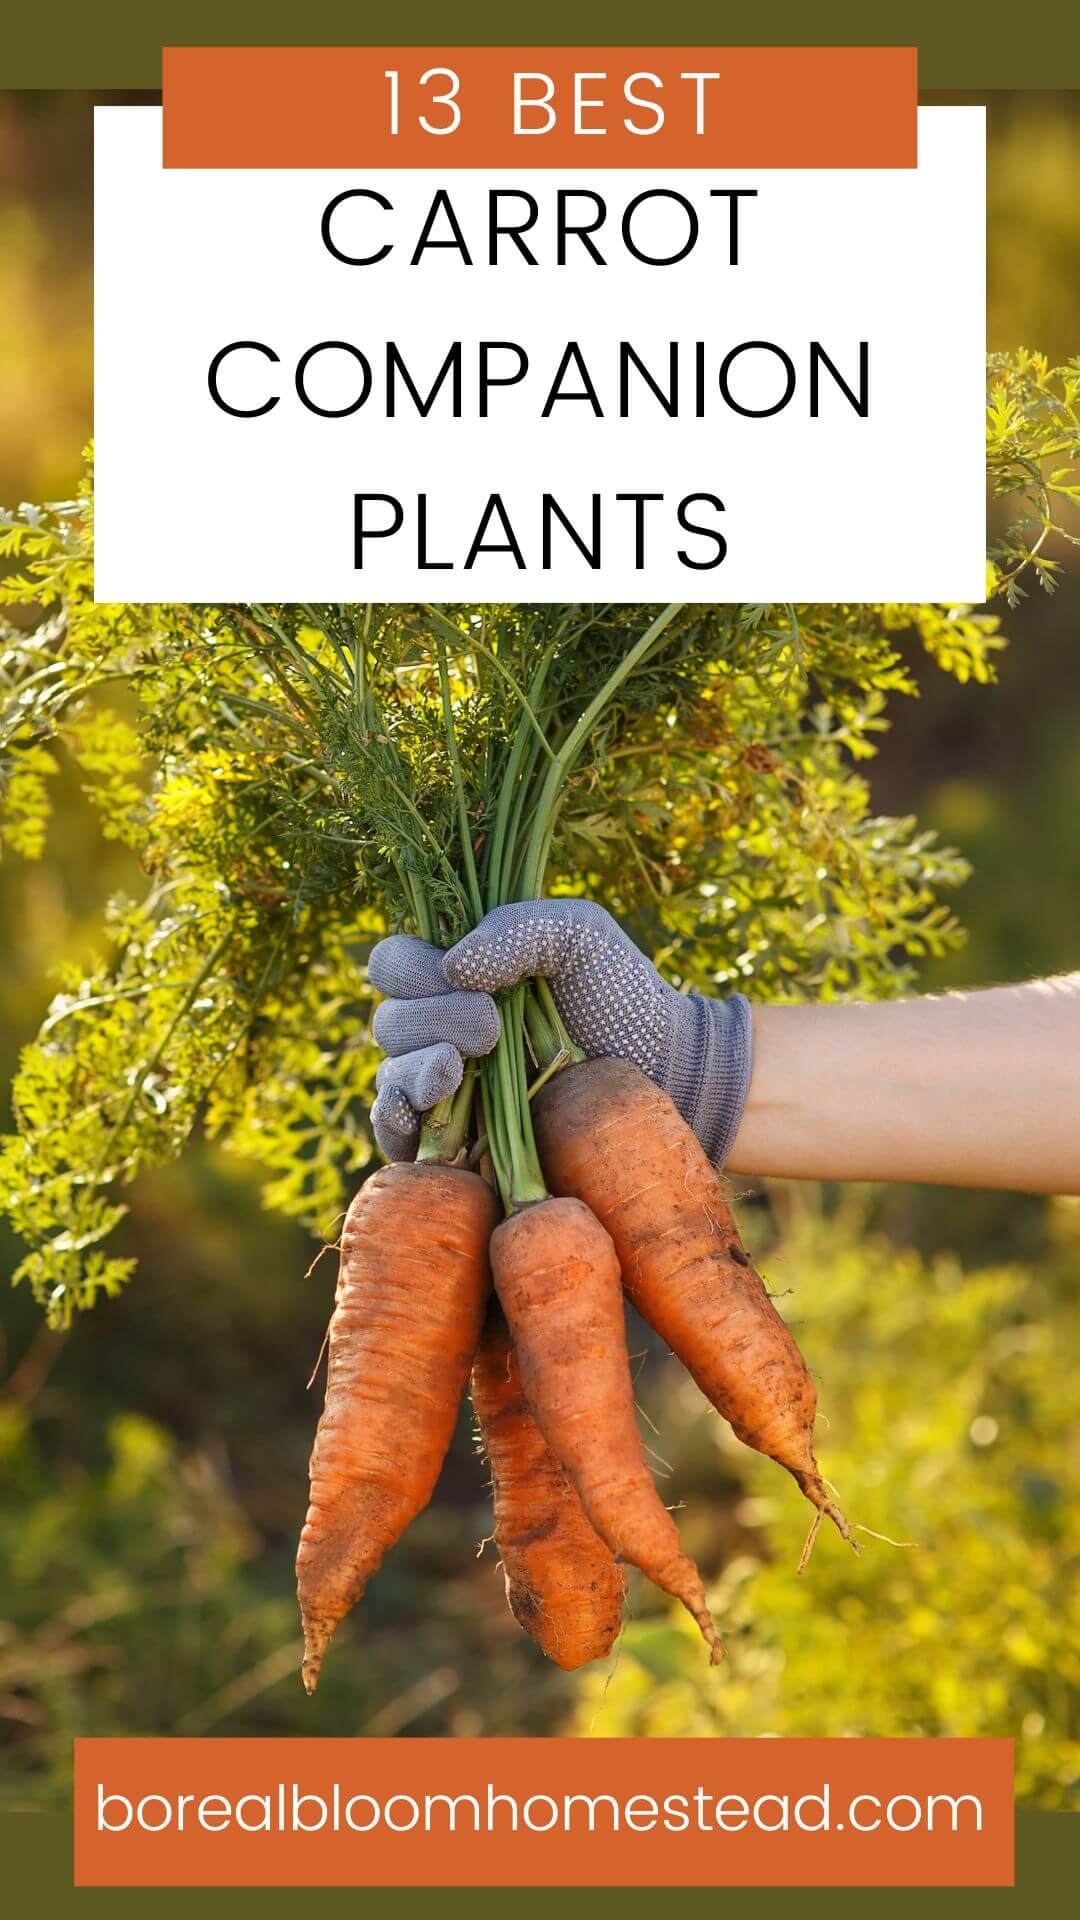 Best carrot companion plant pinterest graphic.